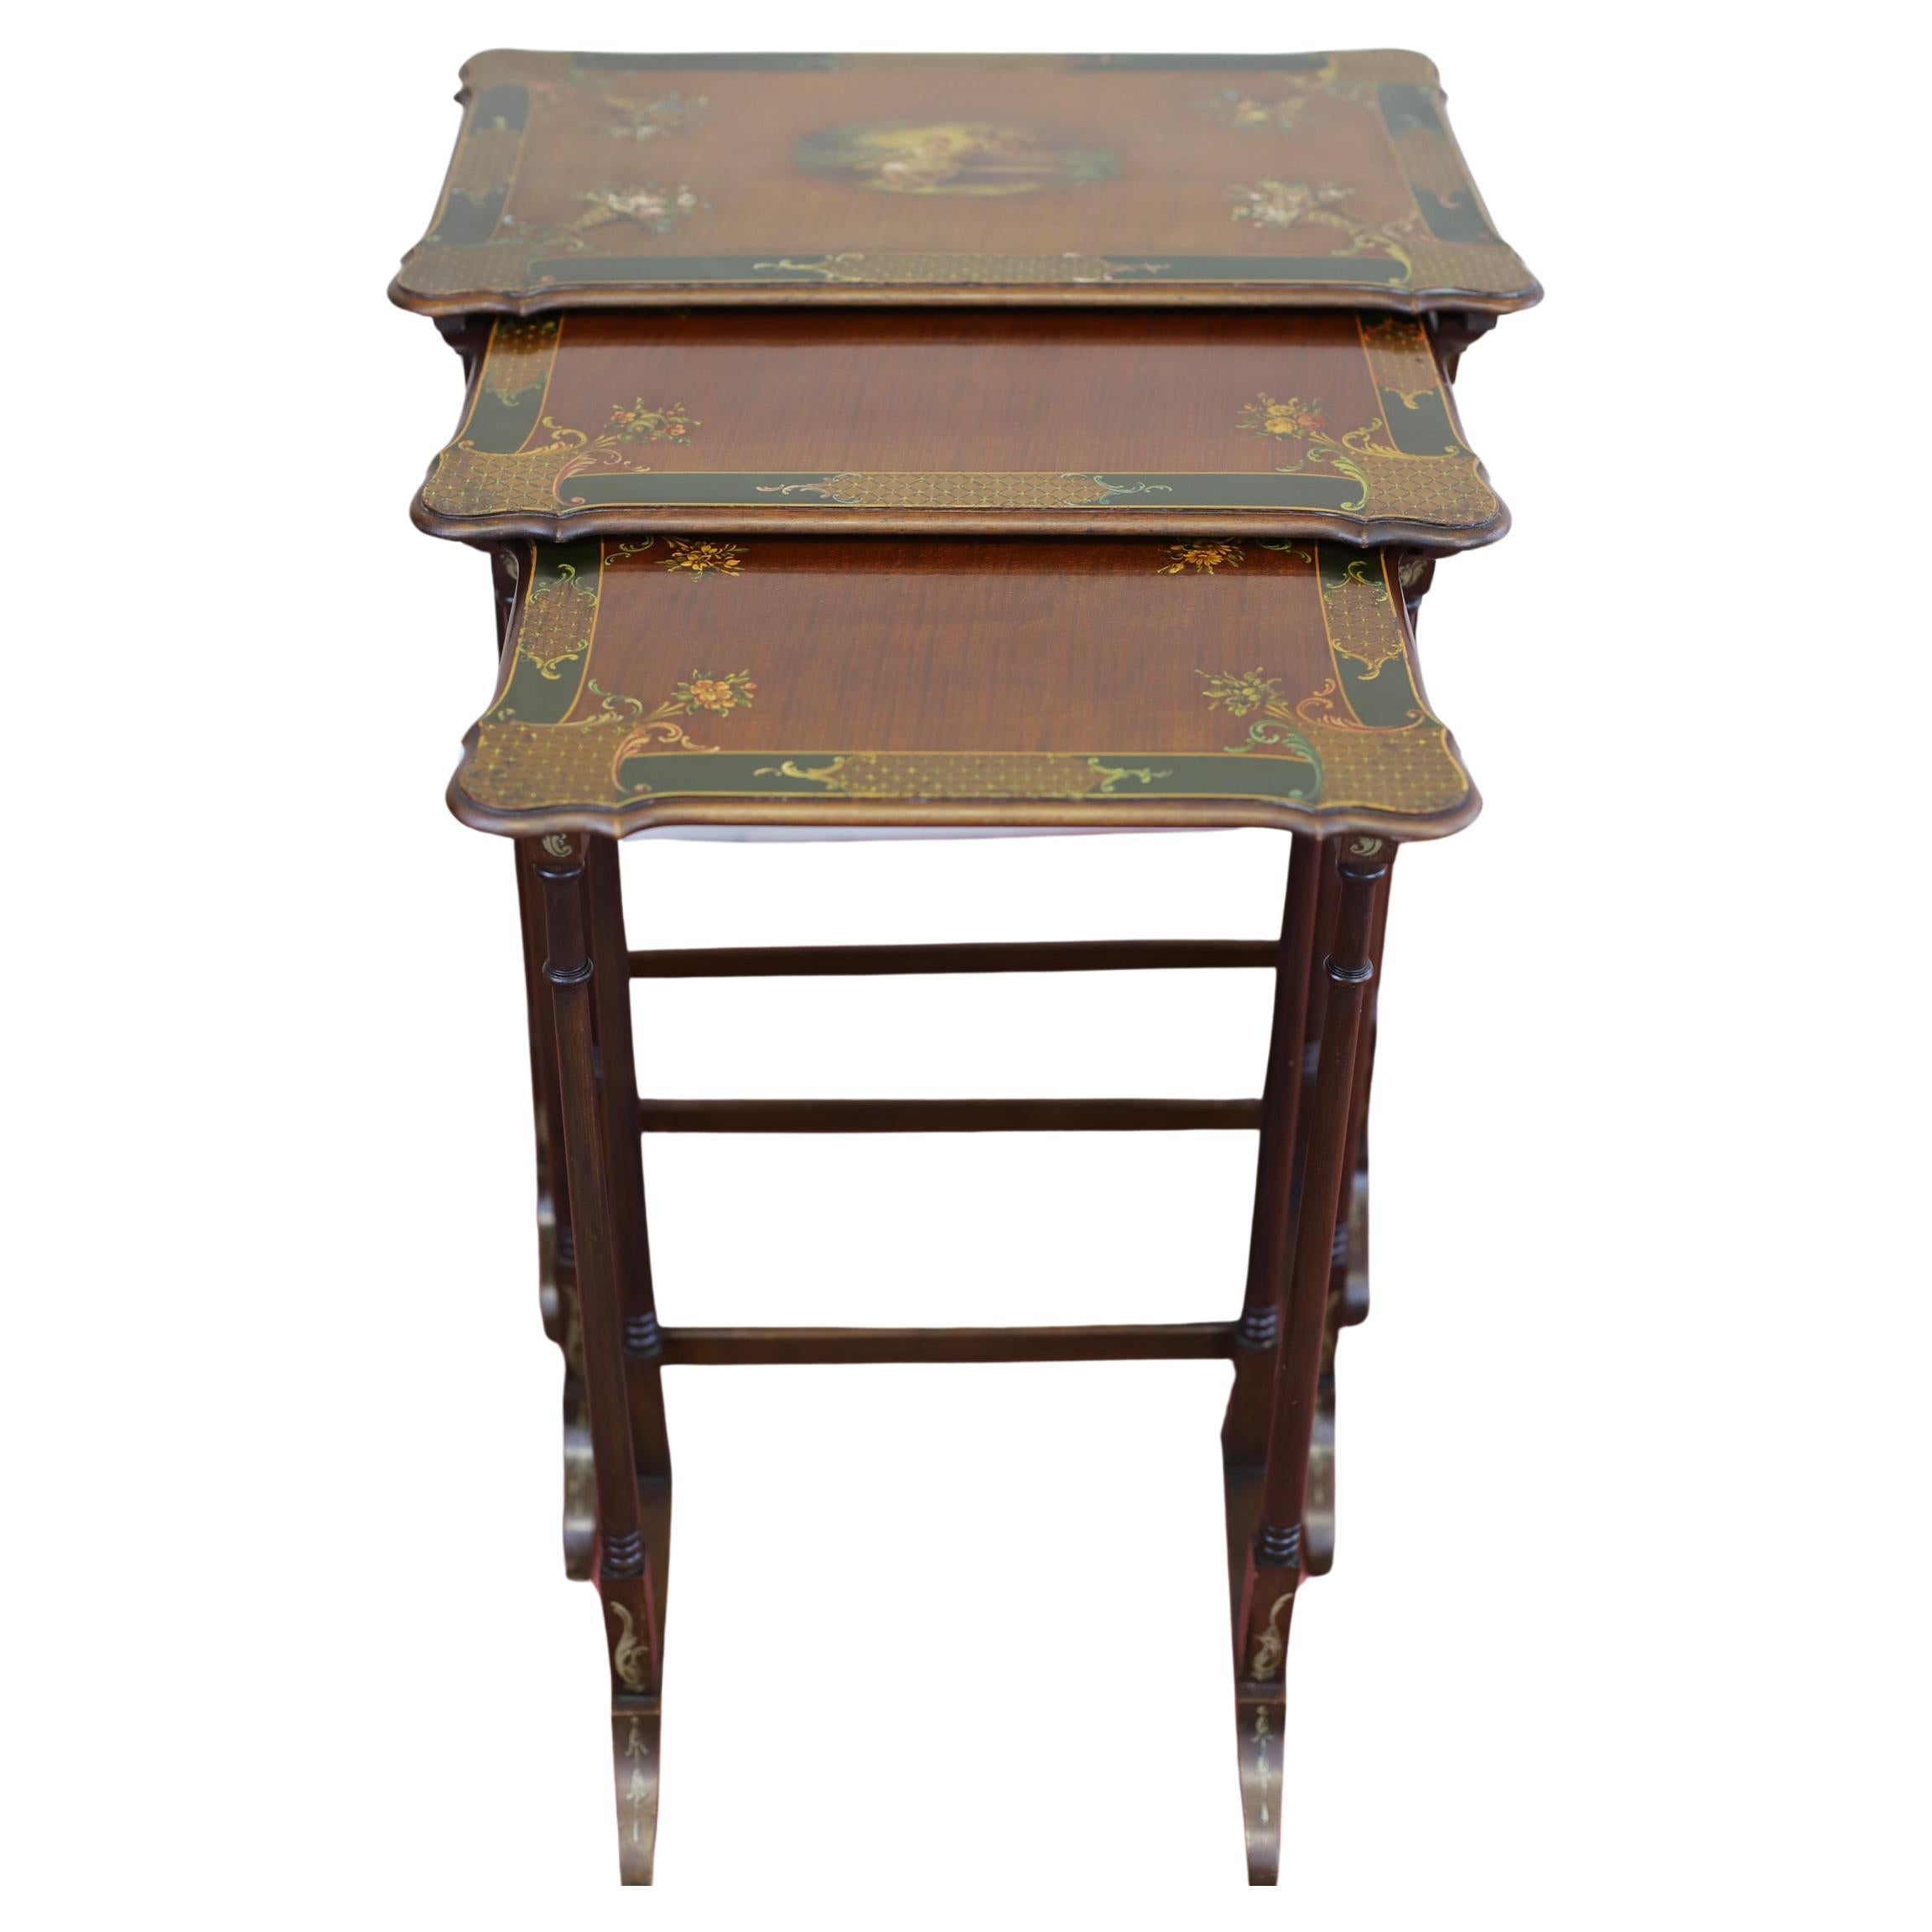 Dies ist eine schöne Reihe von drei viktorianischen Mahagoni handbemalt Verschachtelung Tabellen. Die Tische sind mit einem mehrfarbigen Finish versehen und eignen sich perfekt für Liebhaber von Antiquitäten. Die Tische sind aus hochwertigen